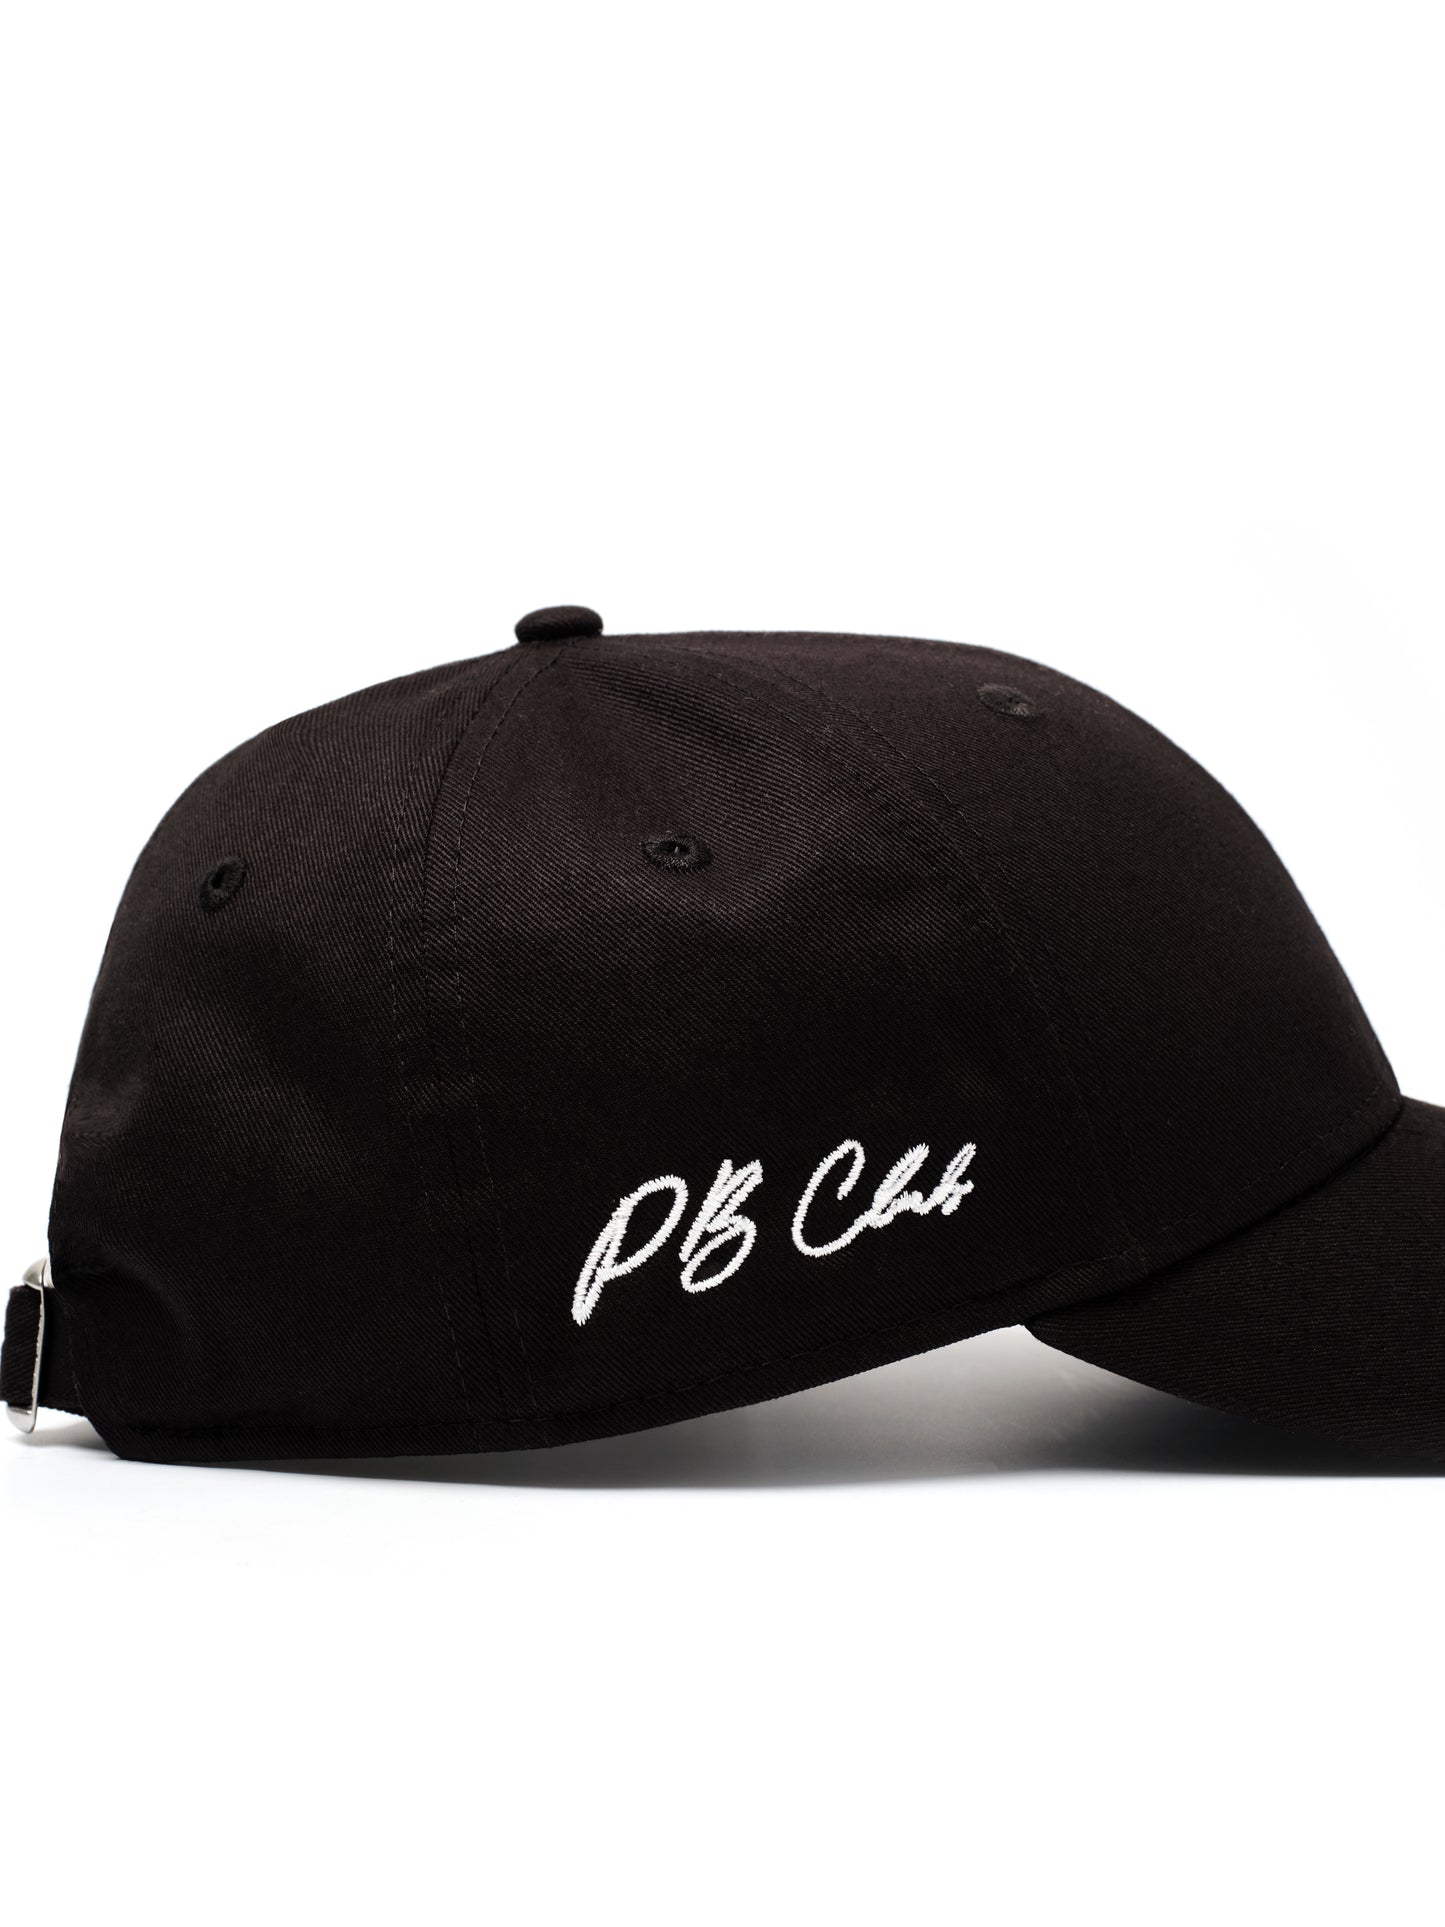 PB Club Signature New Era 9Forty® Cap - Black